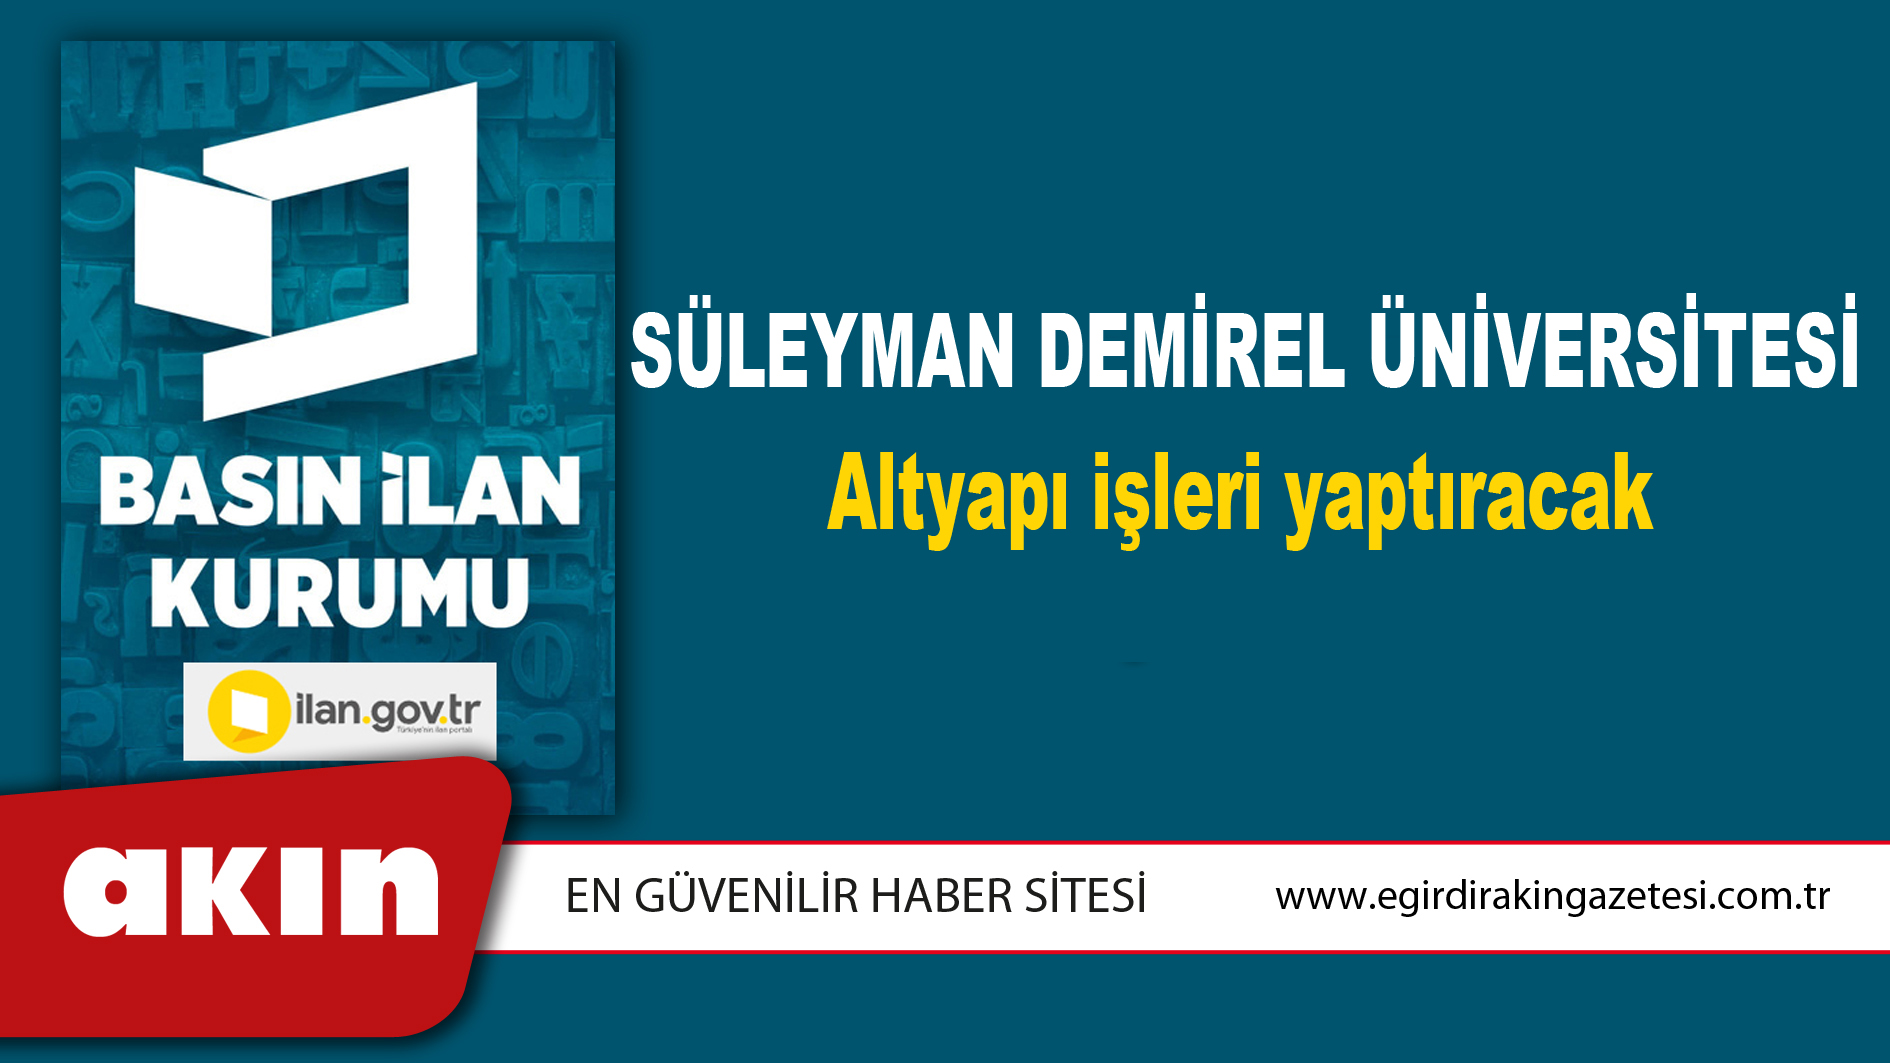 Süleyman Demirel Üniversitesi Altyapı işleri yaptıracak